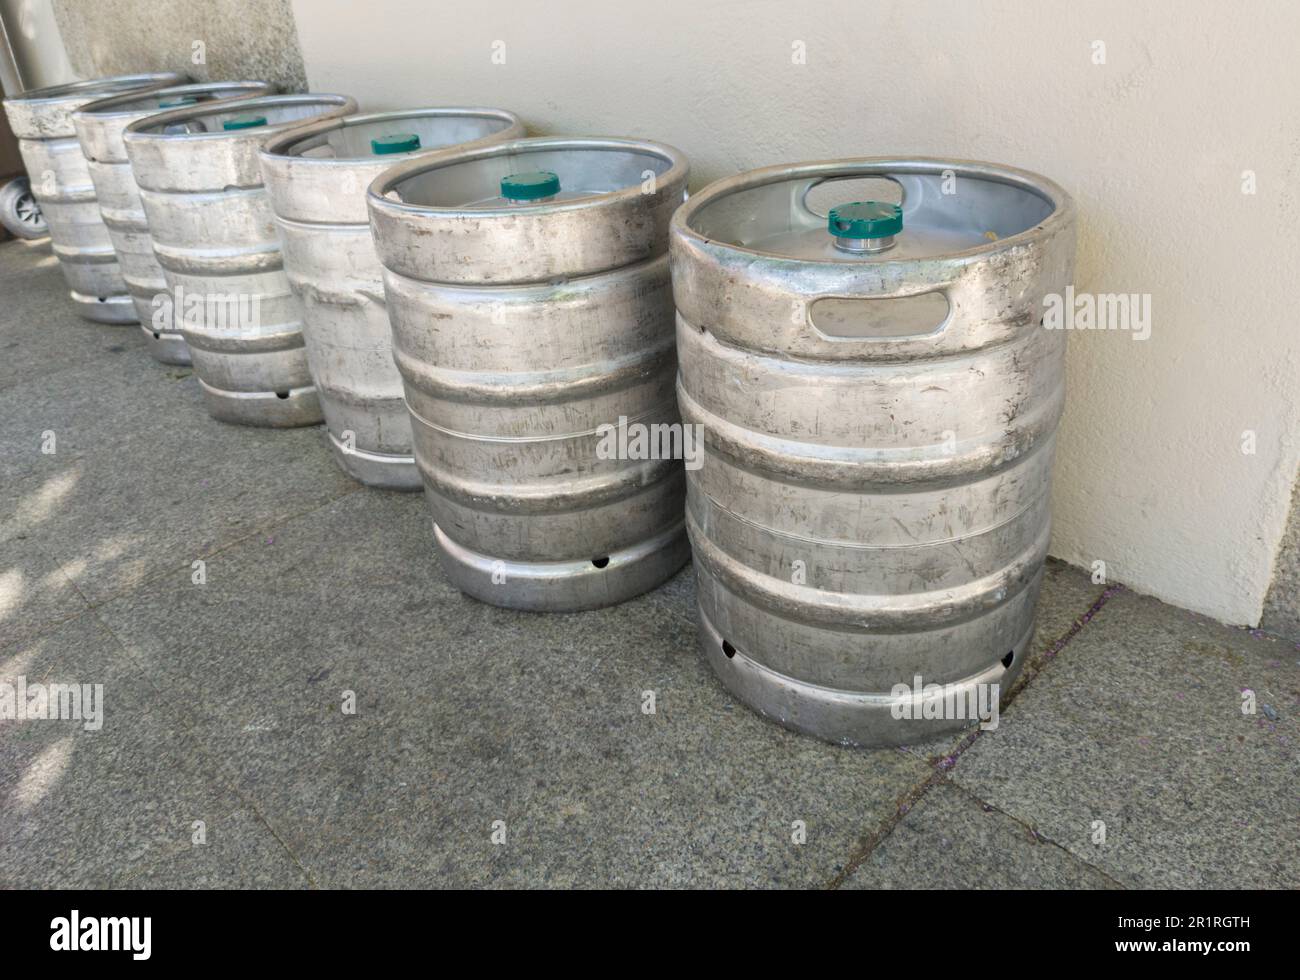 Des fûts de bière sont placés dans la rue du centre-ville. Concept de distribution des boissons. Banque D'Images